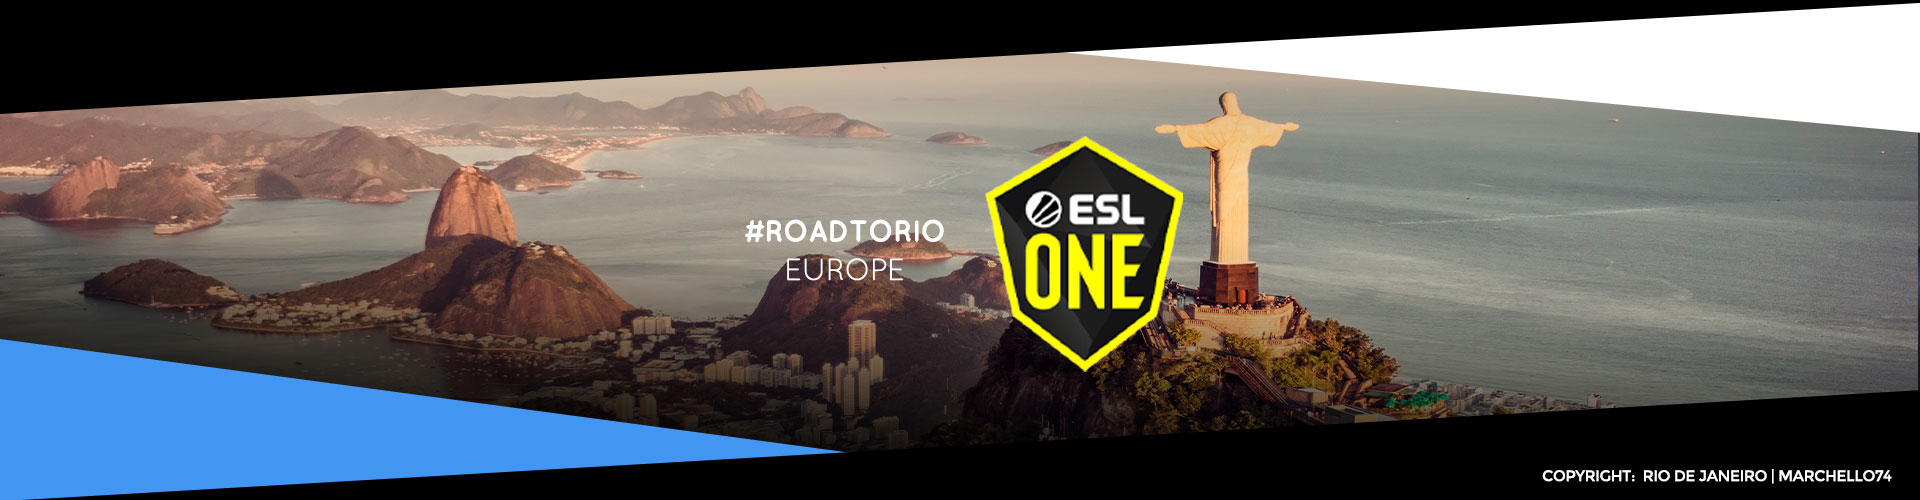 Eventsida för europas ESL One: Road to Rio